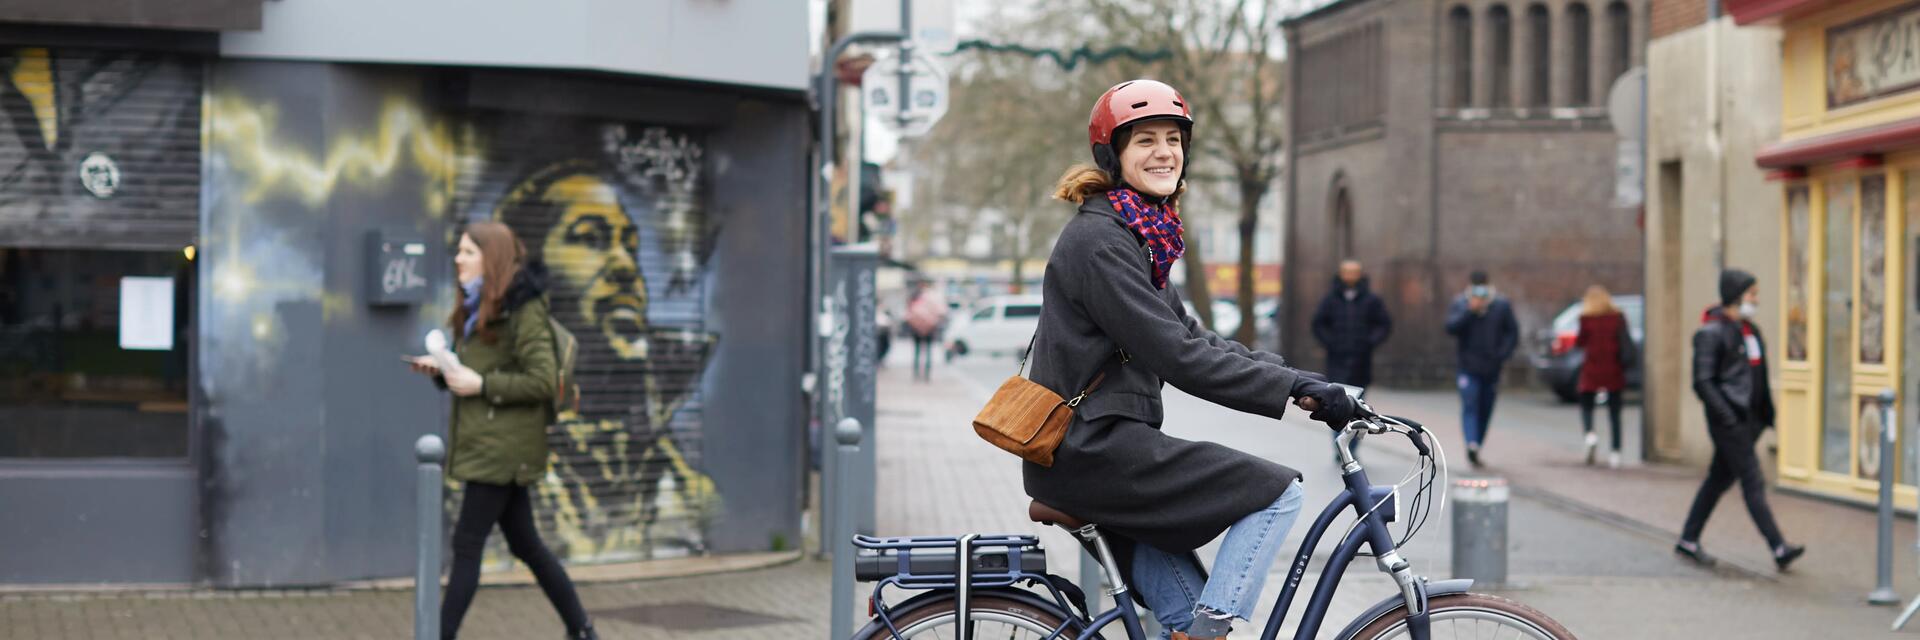 Kobieta jadąca na rowerze elektrycznym